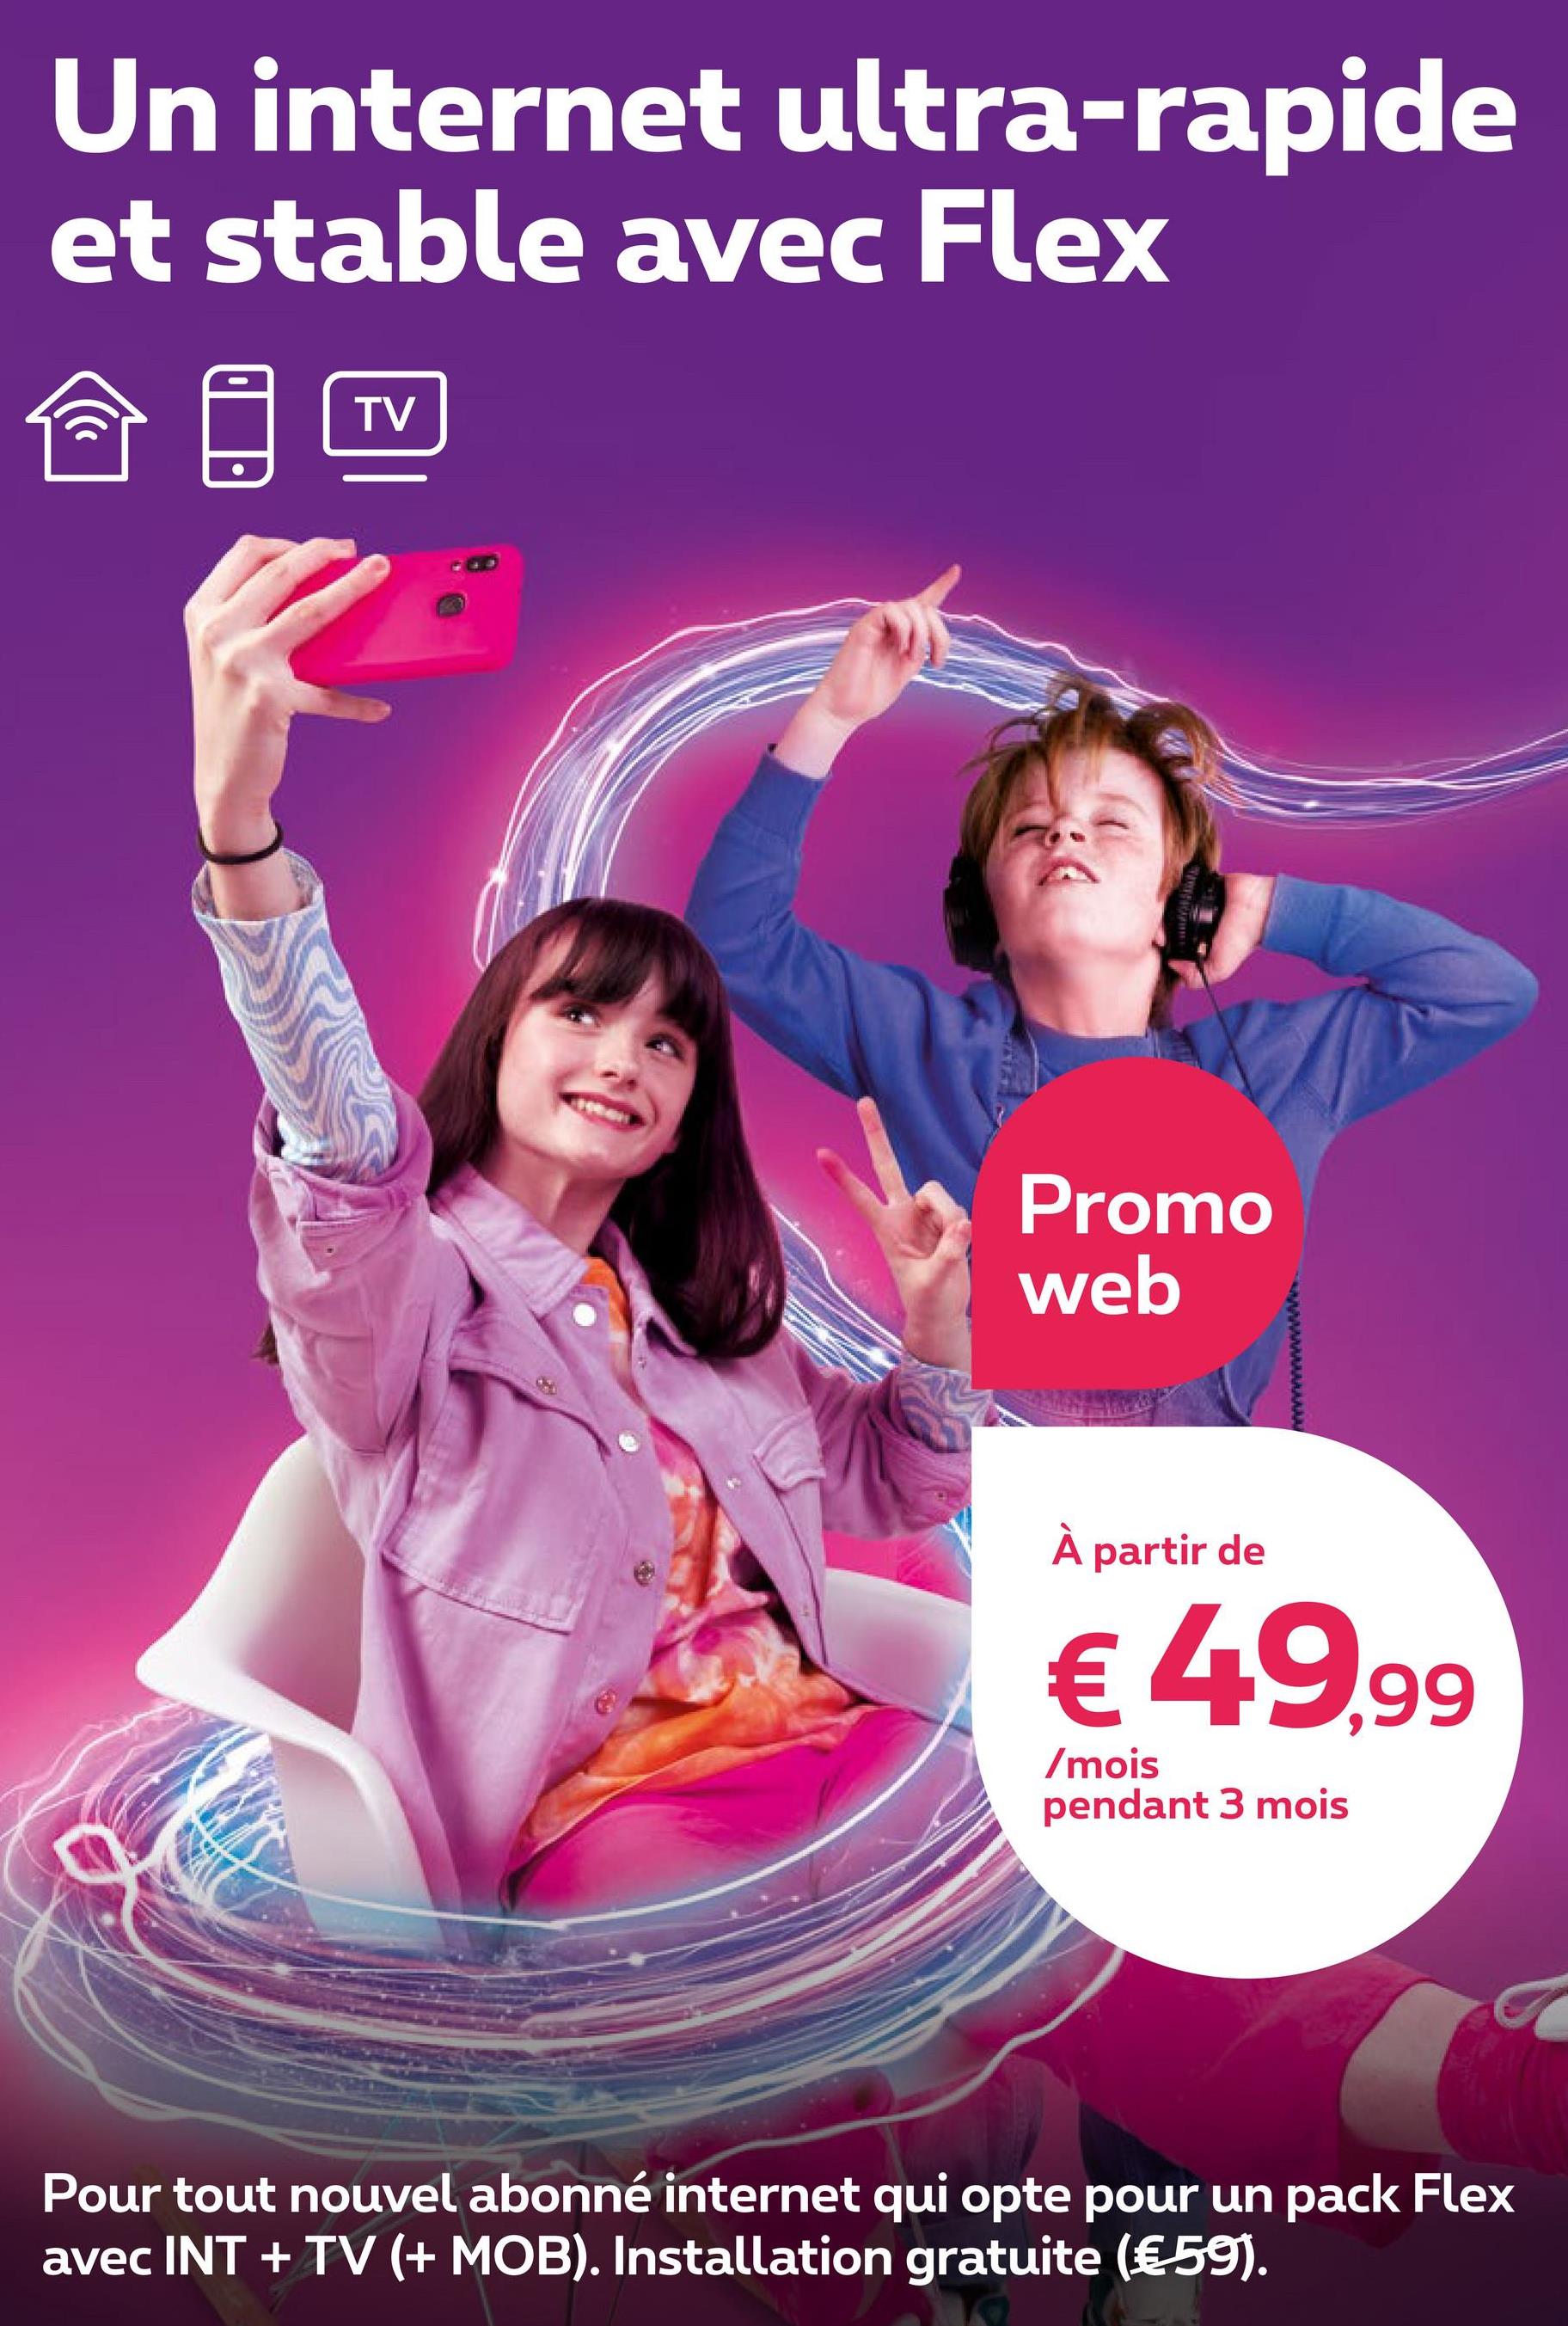 Un internet ultra-rapide
et stable avec Flex
((
TV
Promo
web
À partir de
€ 49,99
/mois
pendant 3 mois
a
Pour tout nouvel abonné internet qui opte pour un pack Flex
avec INT + TV (+ MOB). Installation gratuite (€ 59).